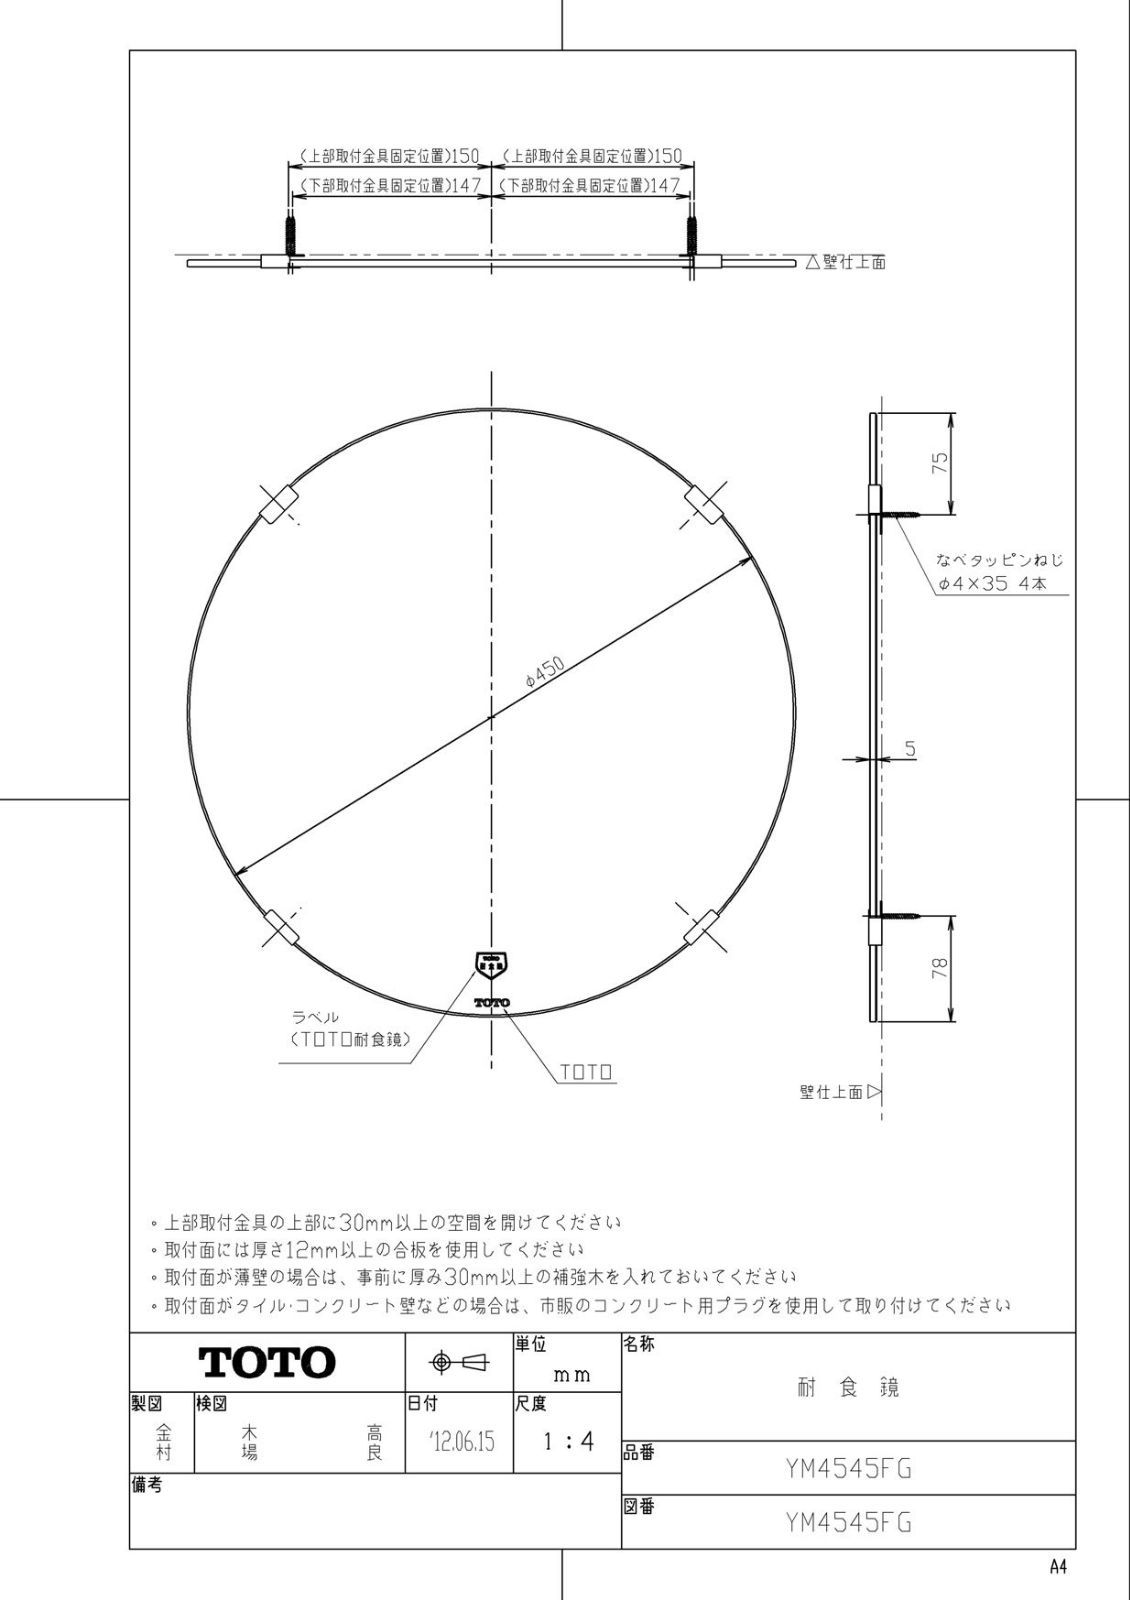 TOTO 耐食鏡 アーチ形450x1000 YM4510FA